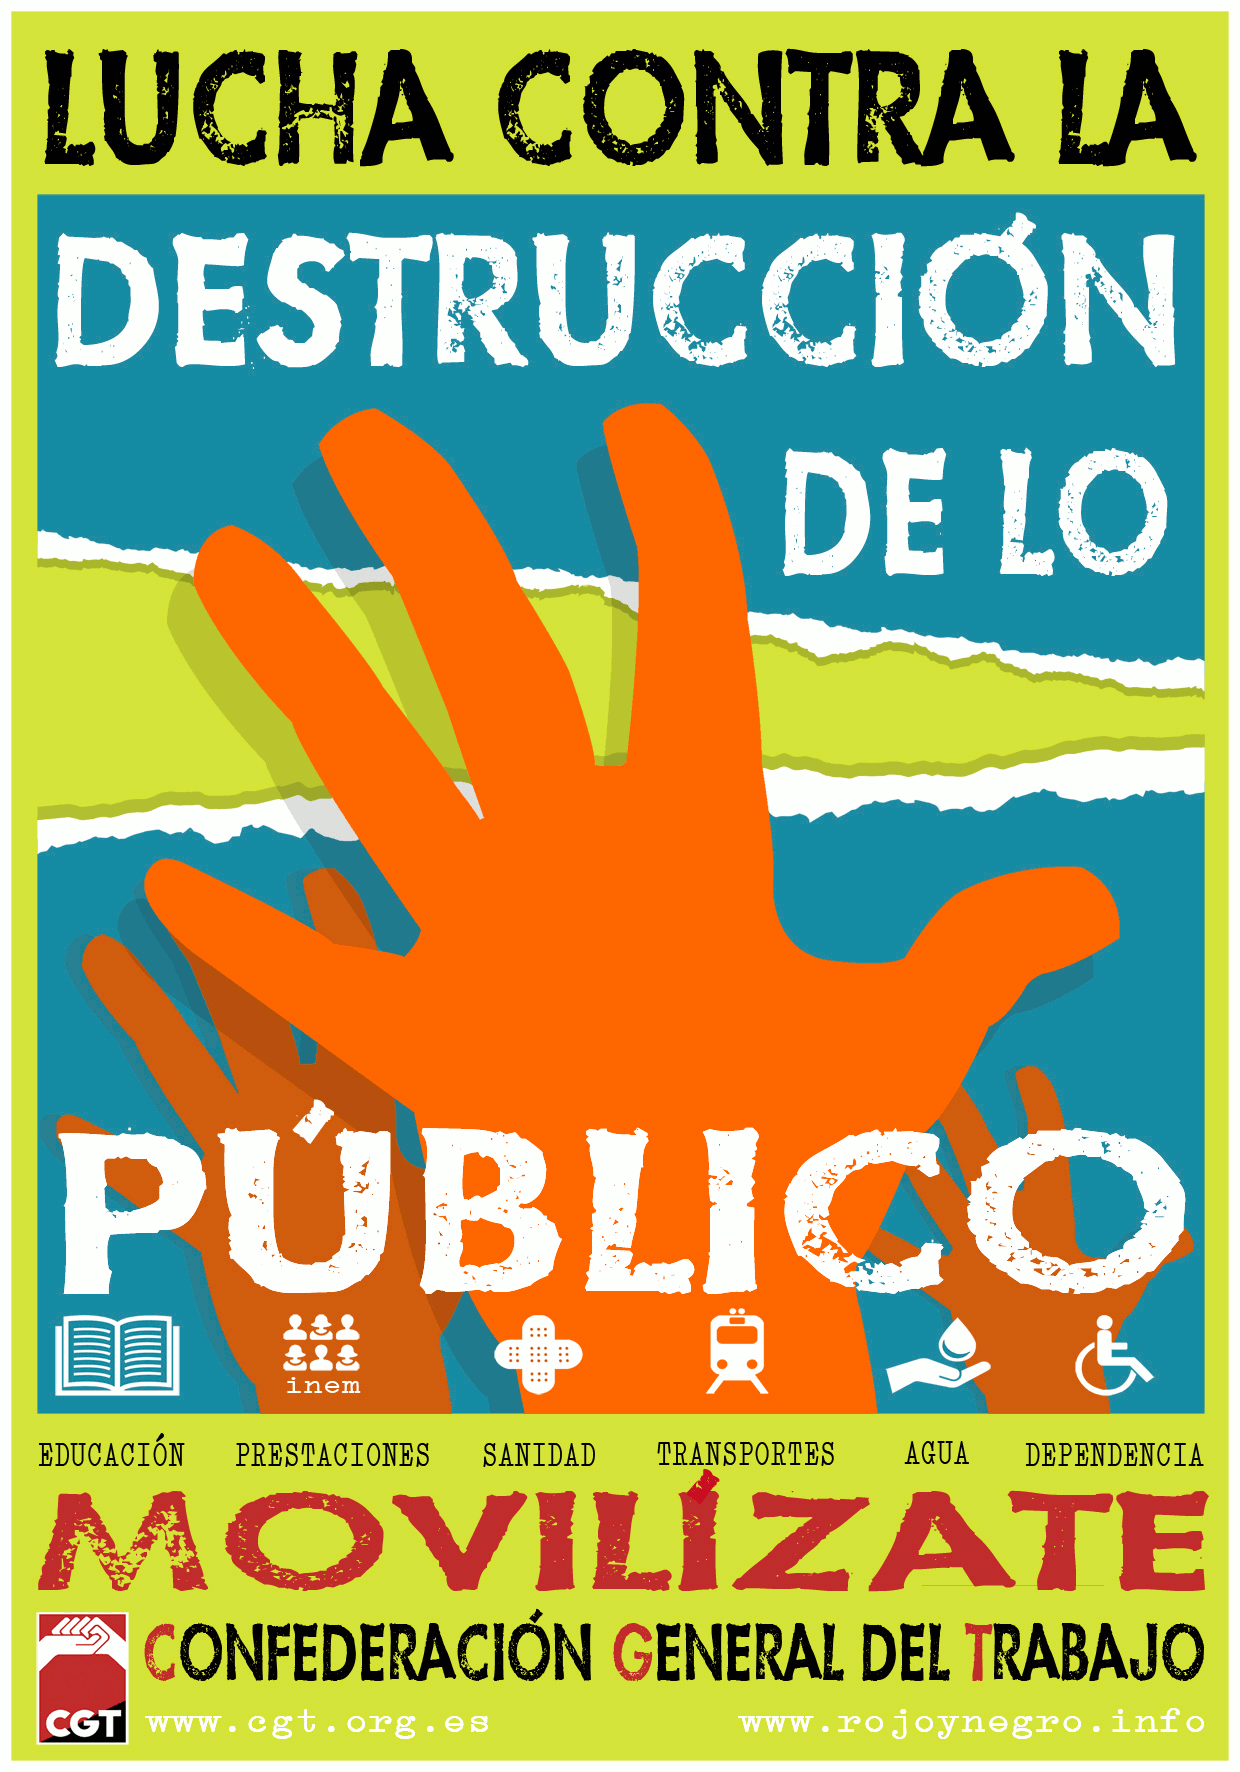 Lucha contra la destrucción de lo publico